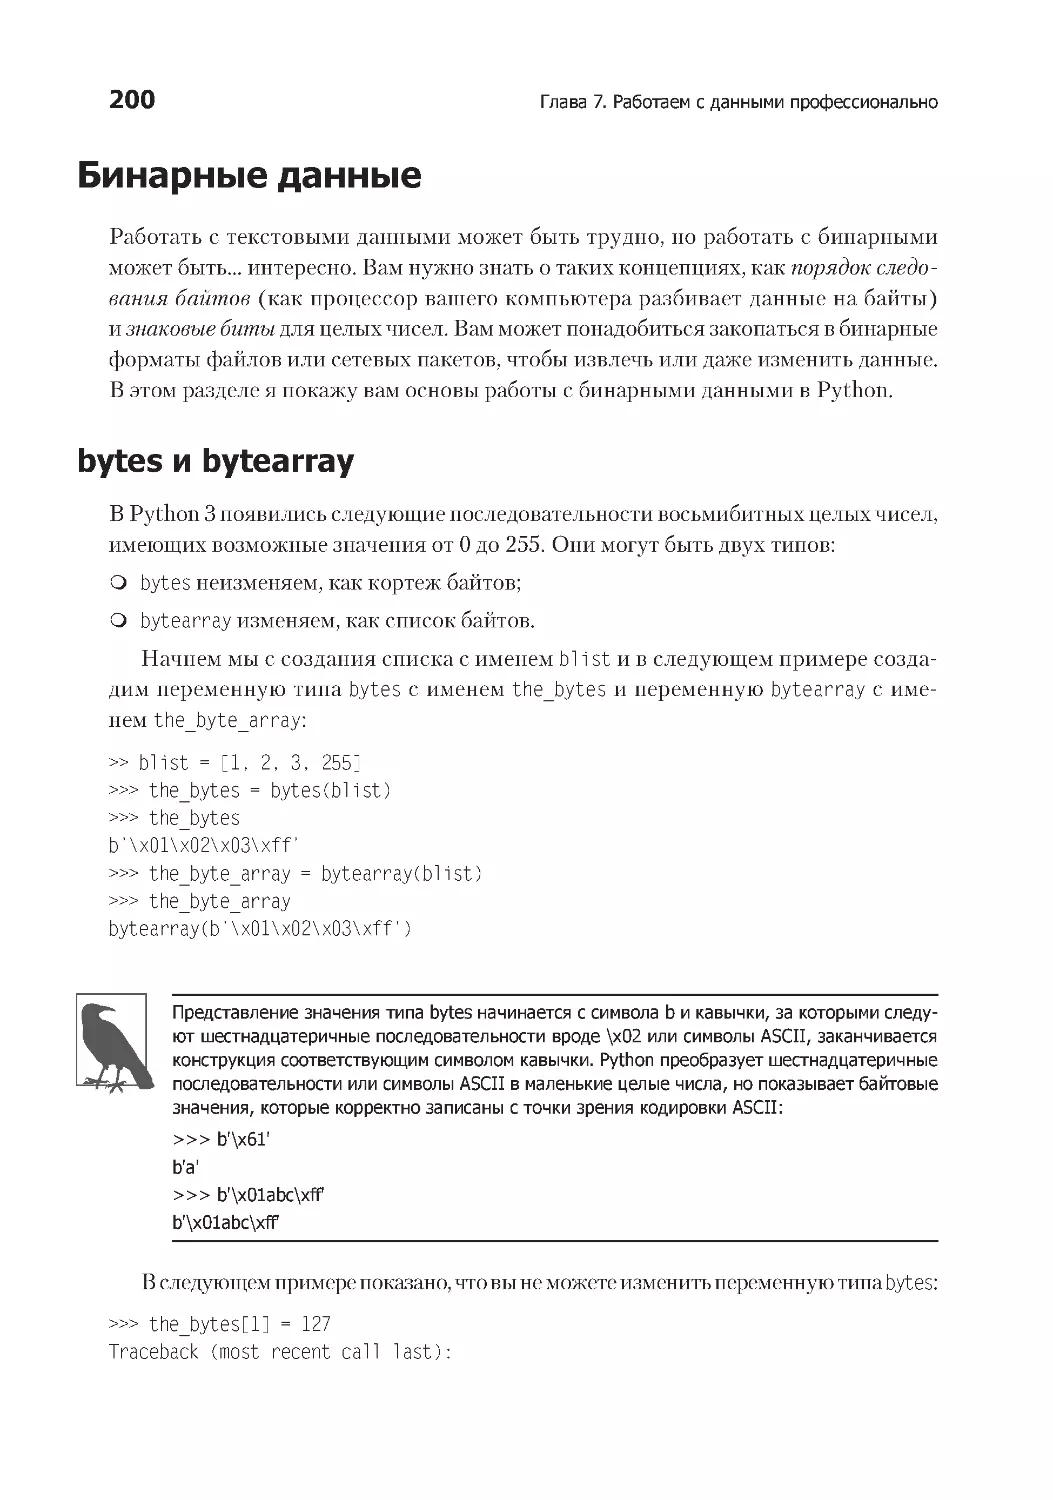 Бинарные данные
bytes и bytearray